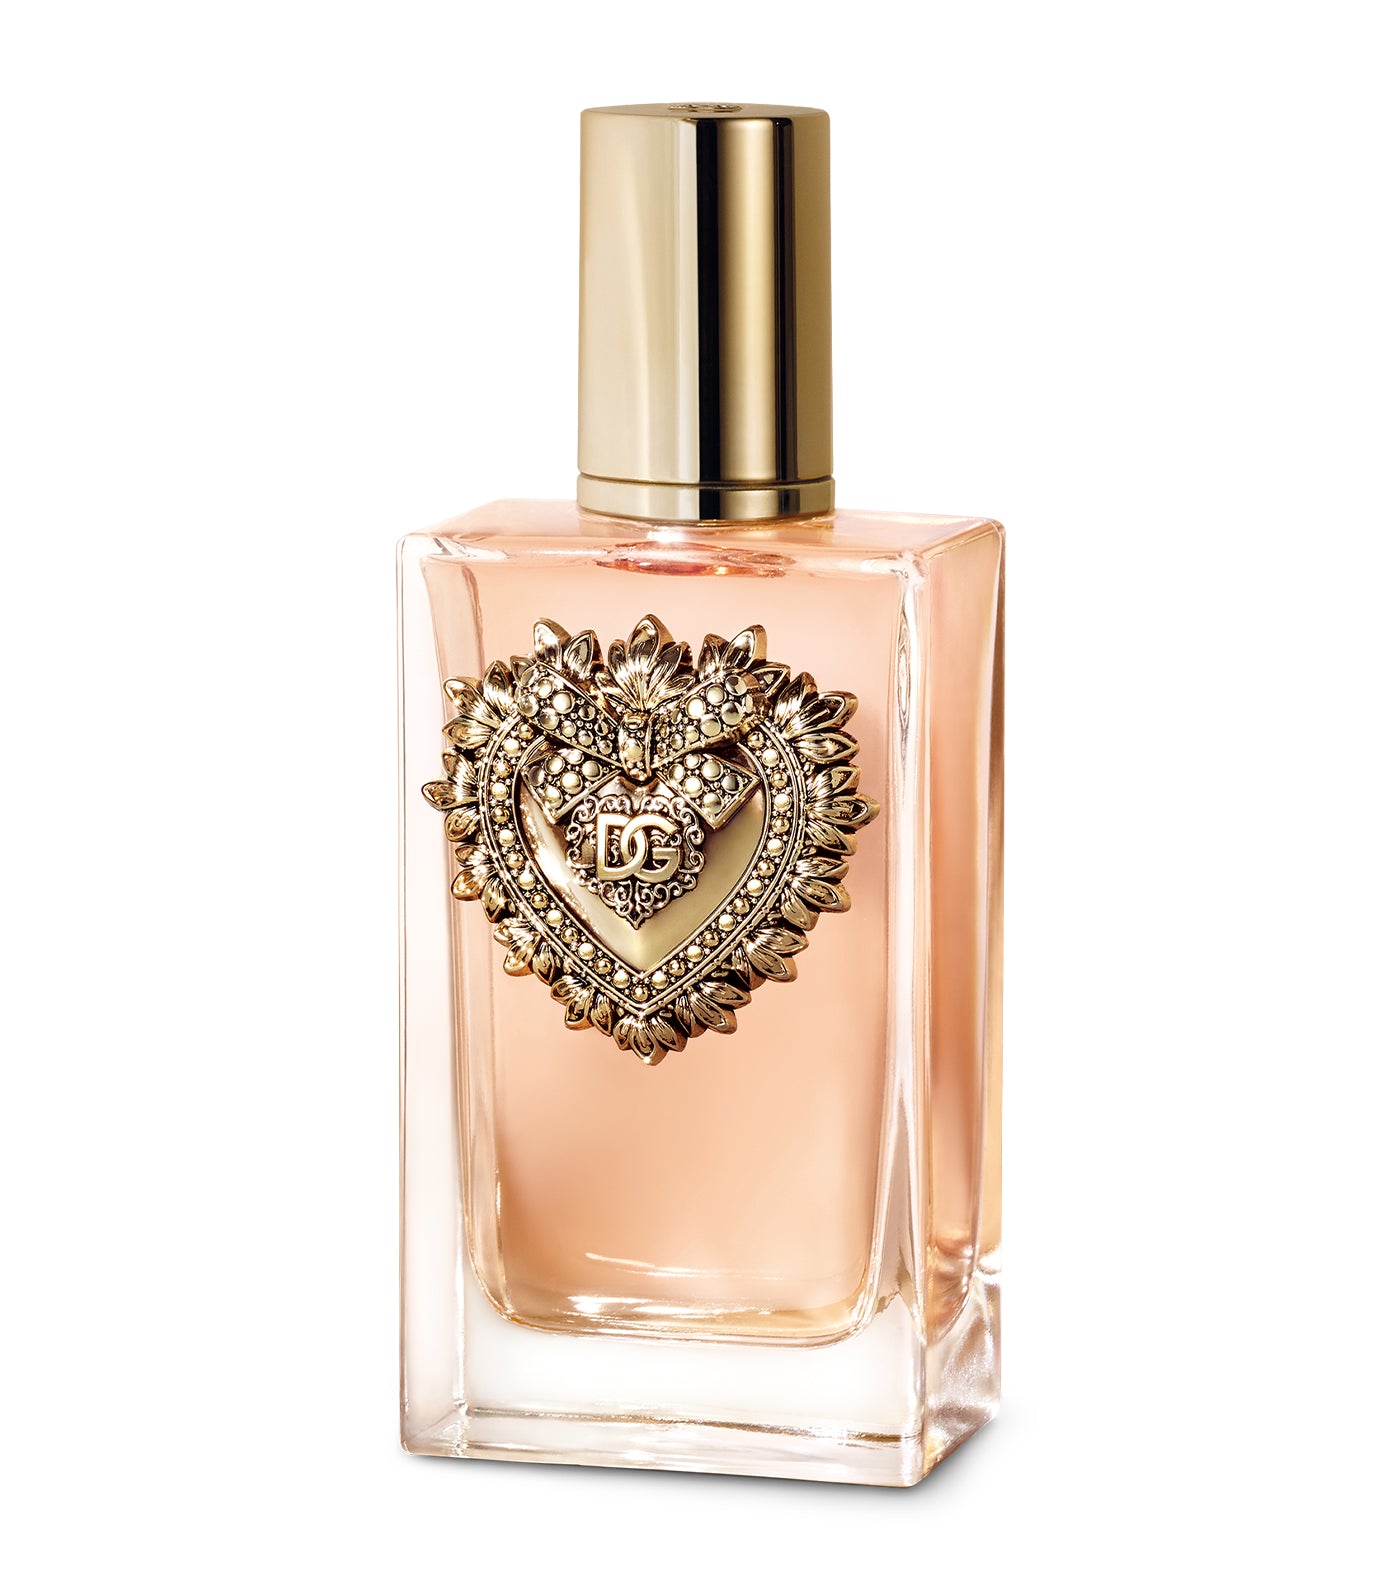 Dolce&Gabbana Devotion Eau de Parfum